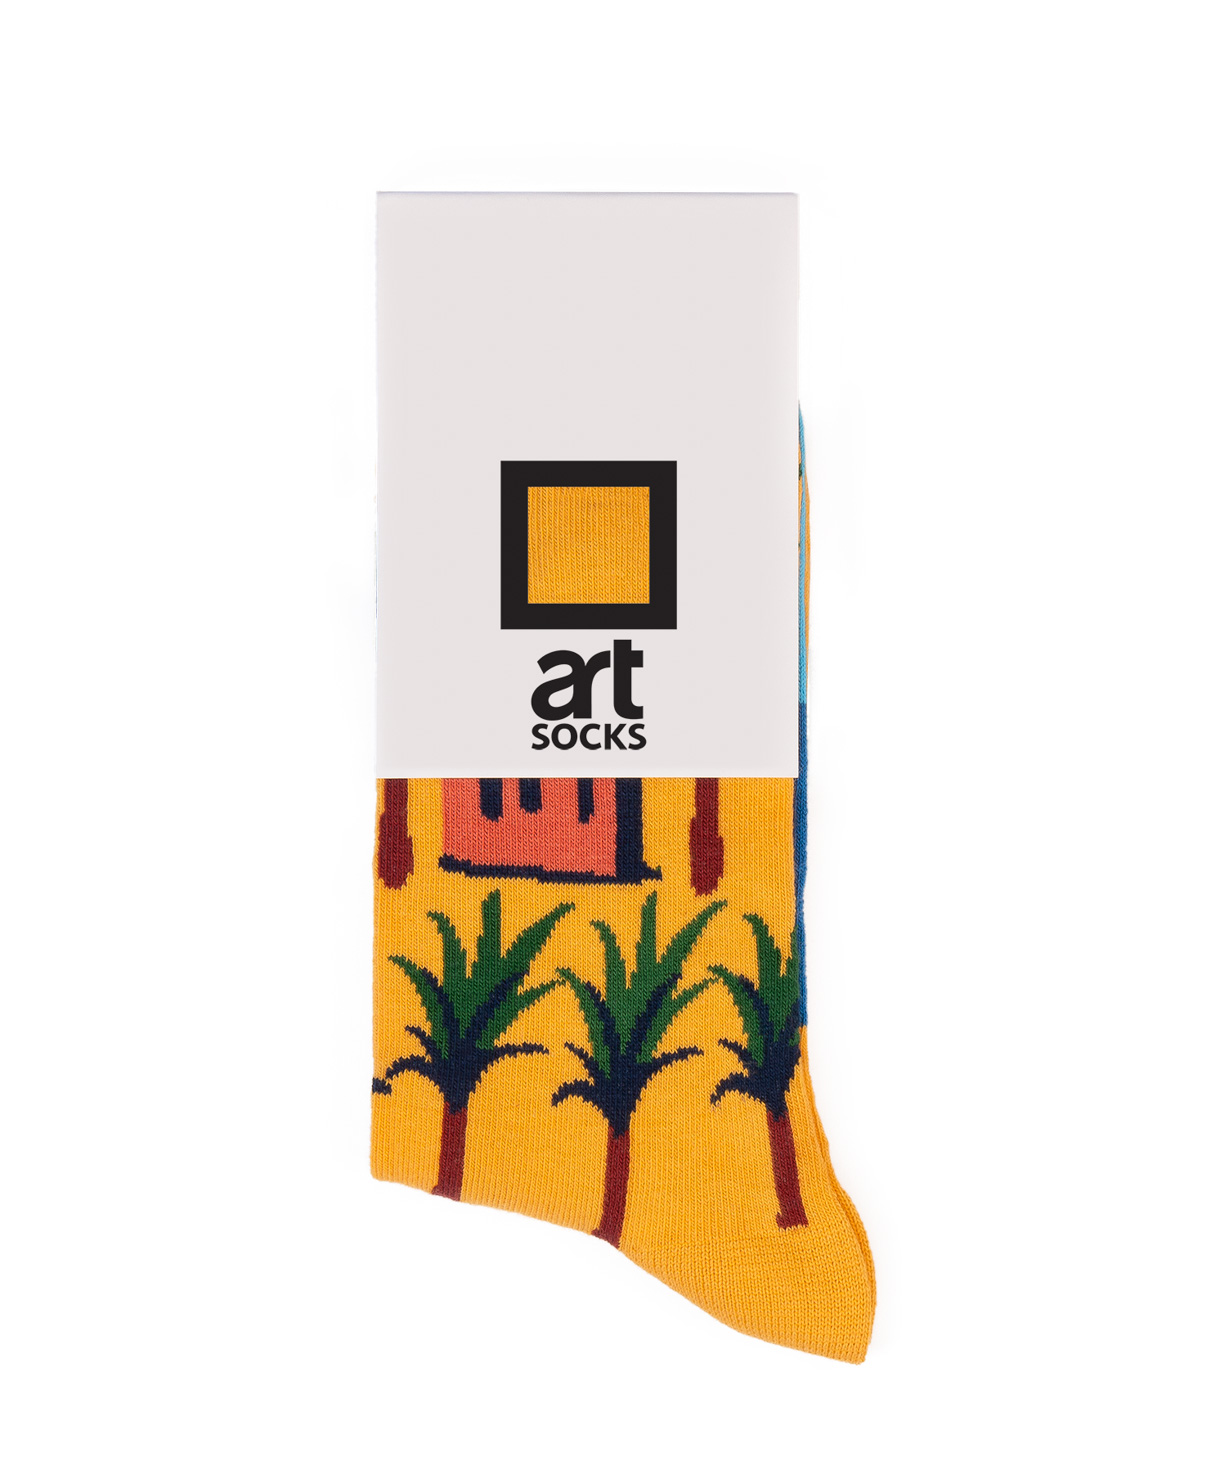 Գուլպաներ «Art socks» «Պալմա»